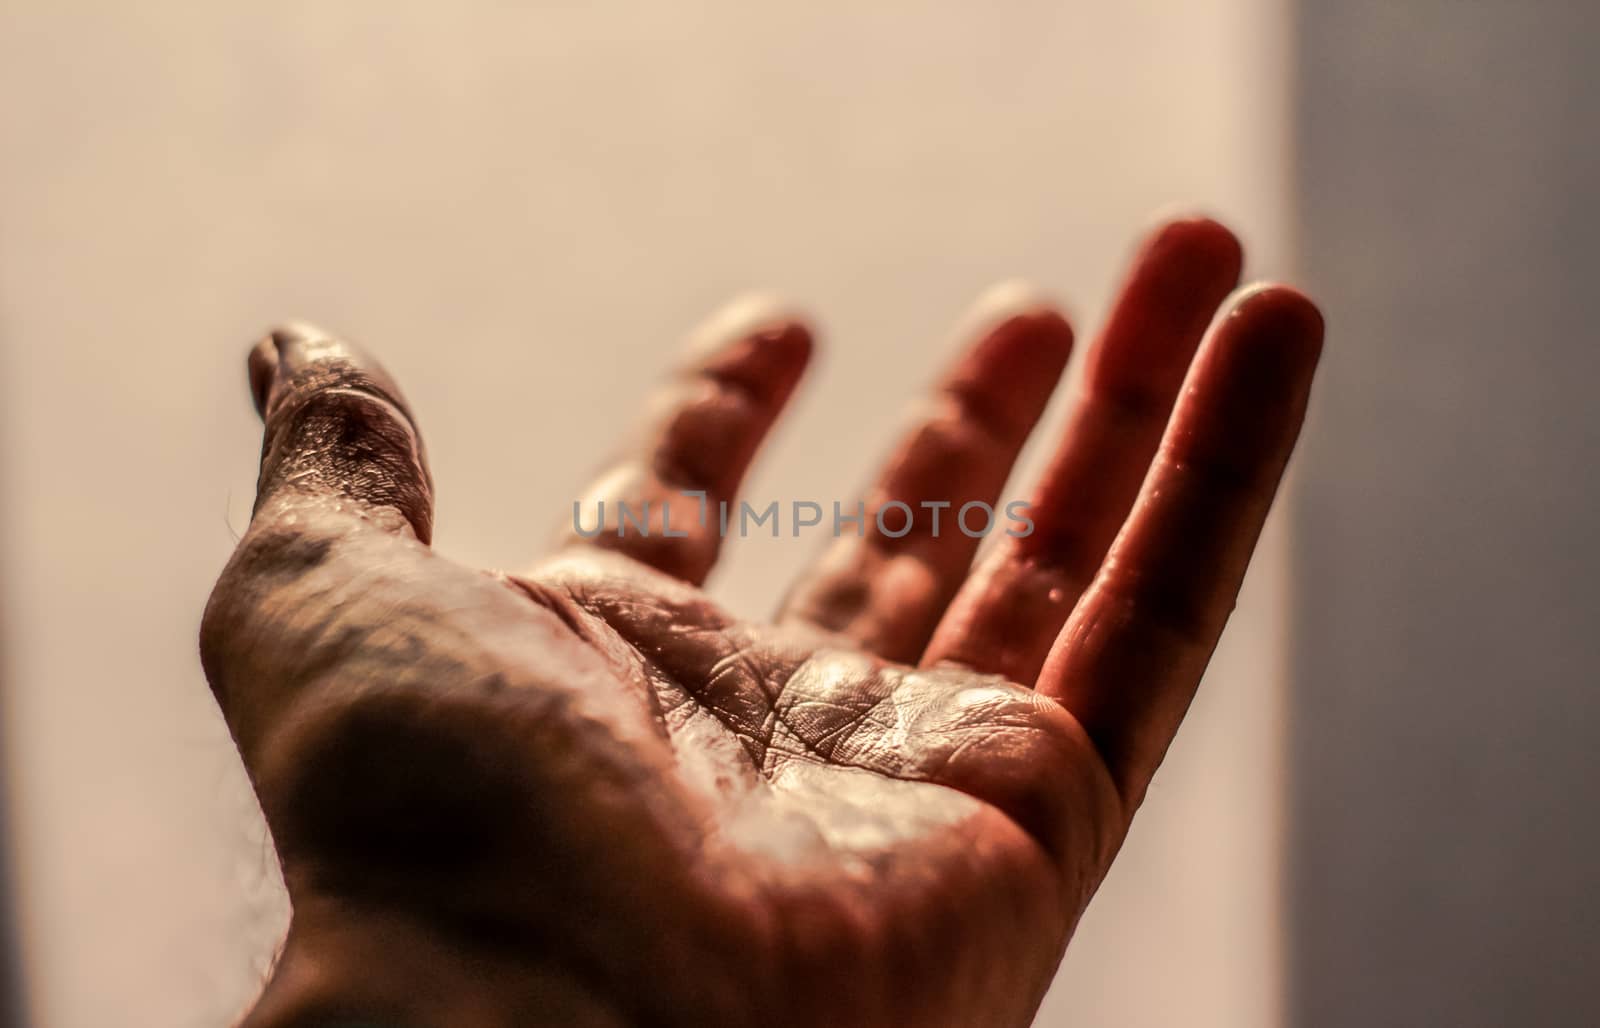 Photograph of an open human hand